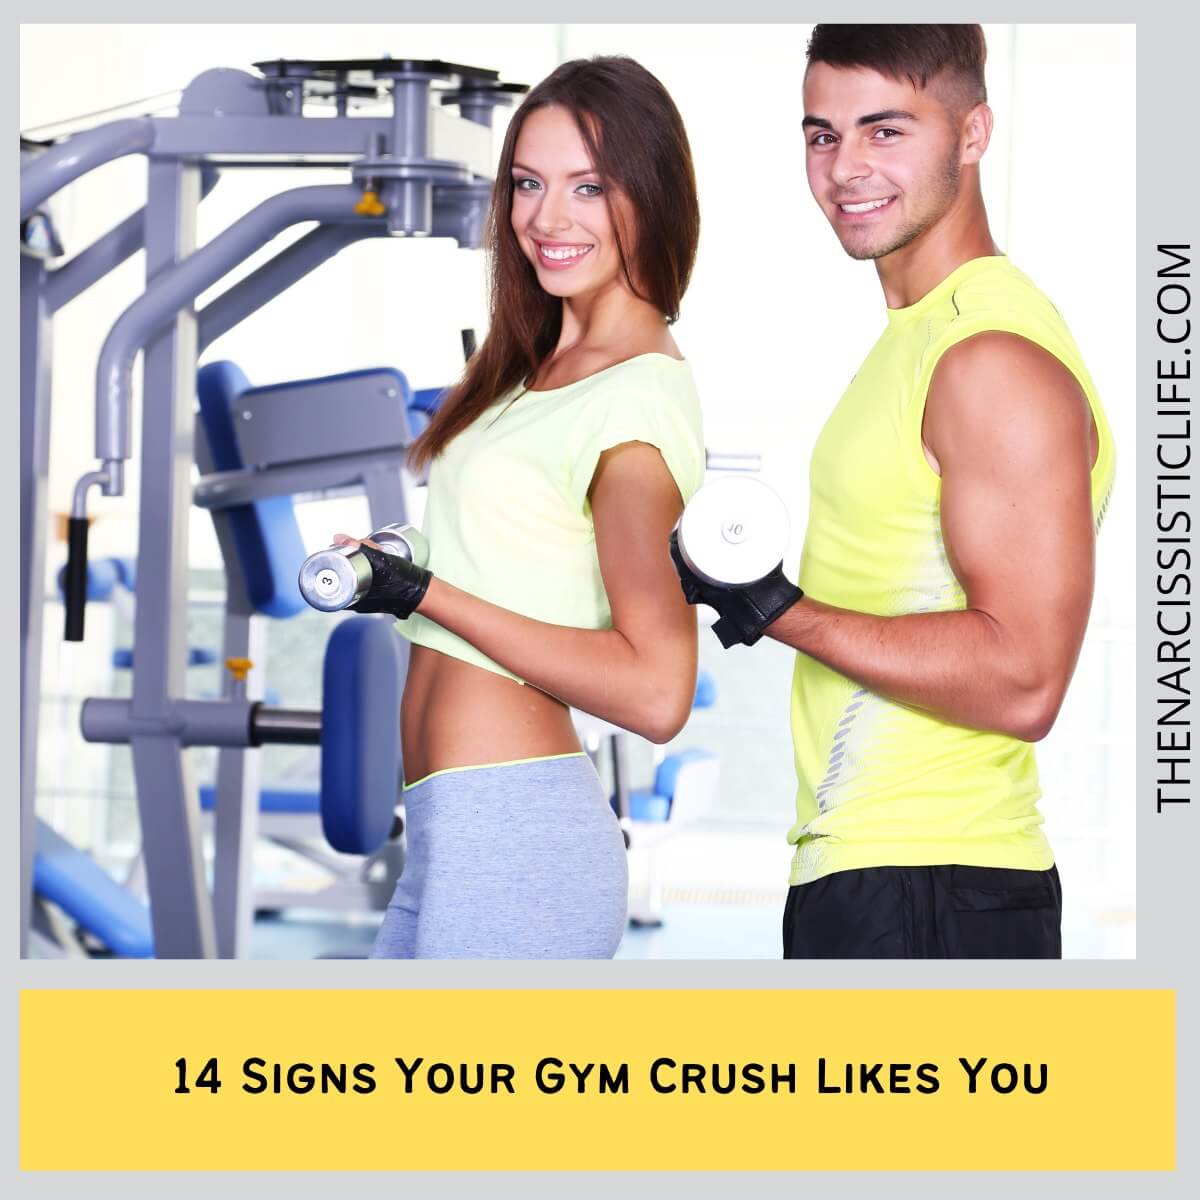 Gym Crush Descifrando las Señales de Atracción en el Gimnasio (Interés)